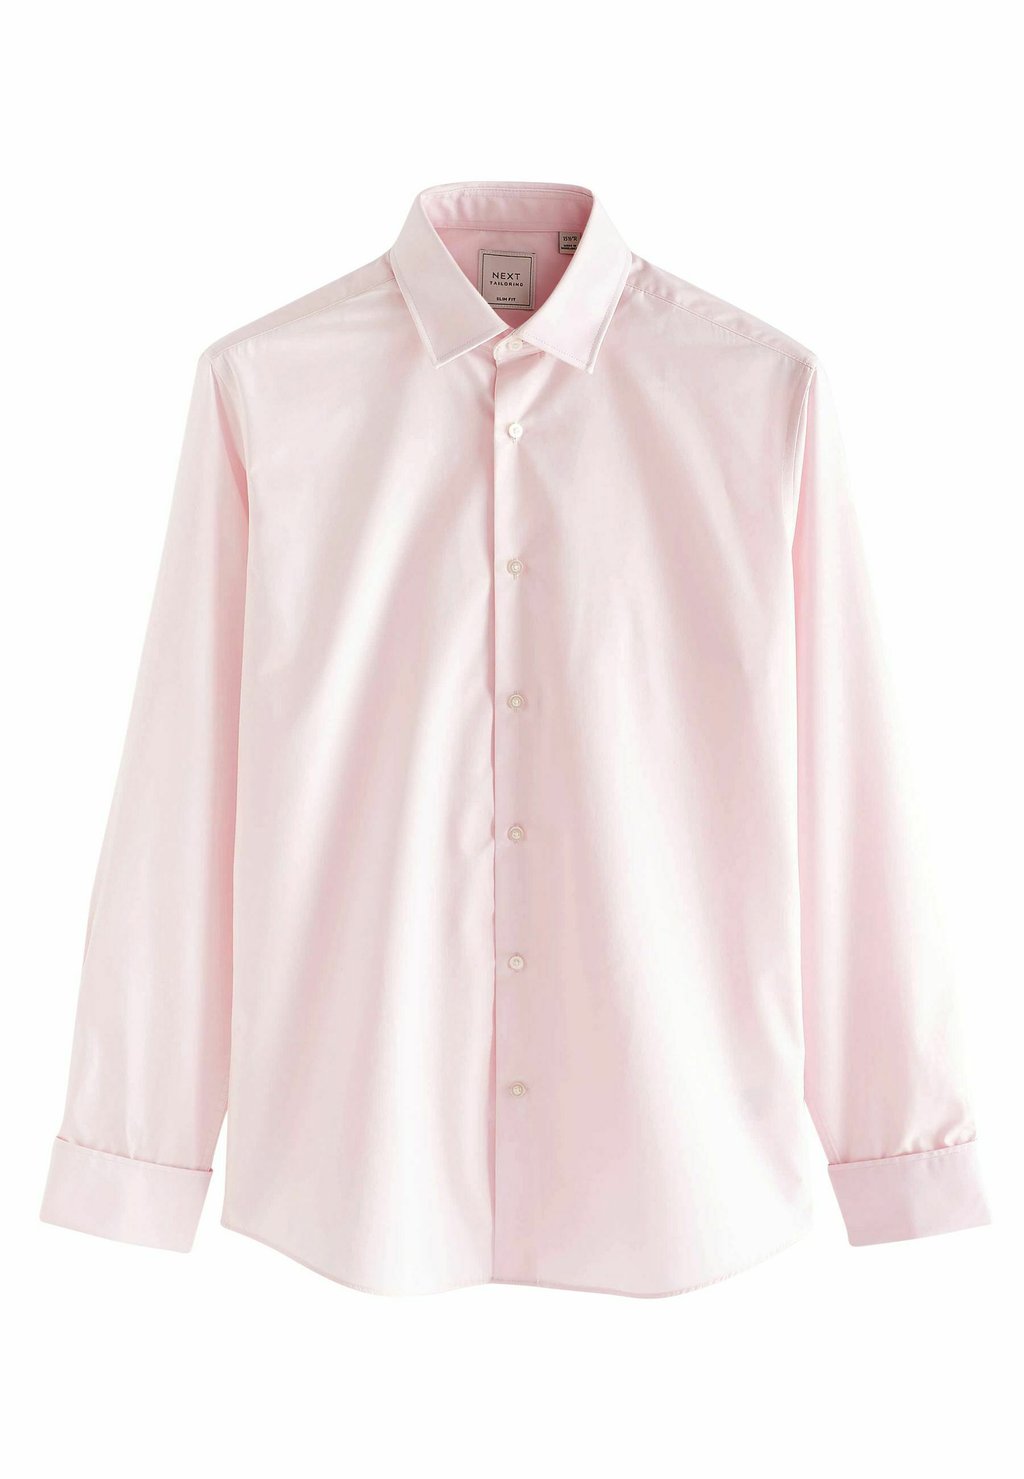 Деловая рубашка SLIM FIT Next, розовый